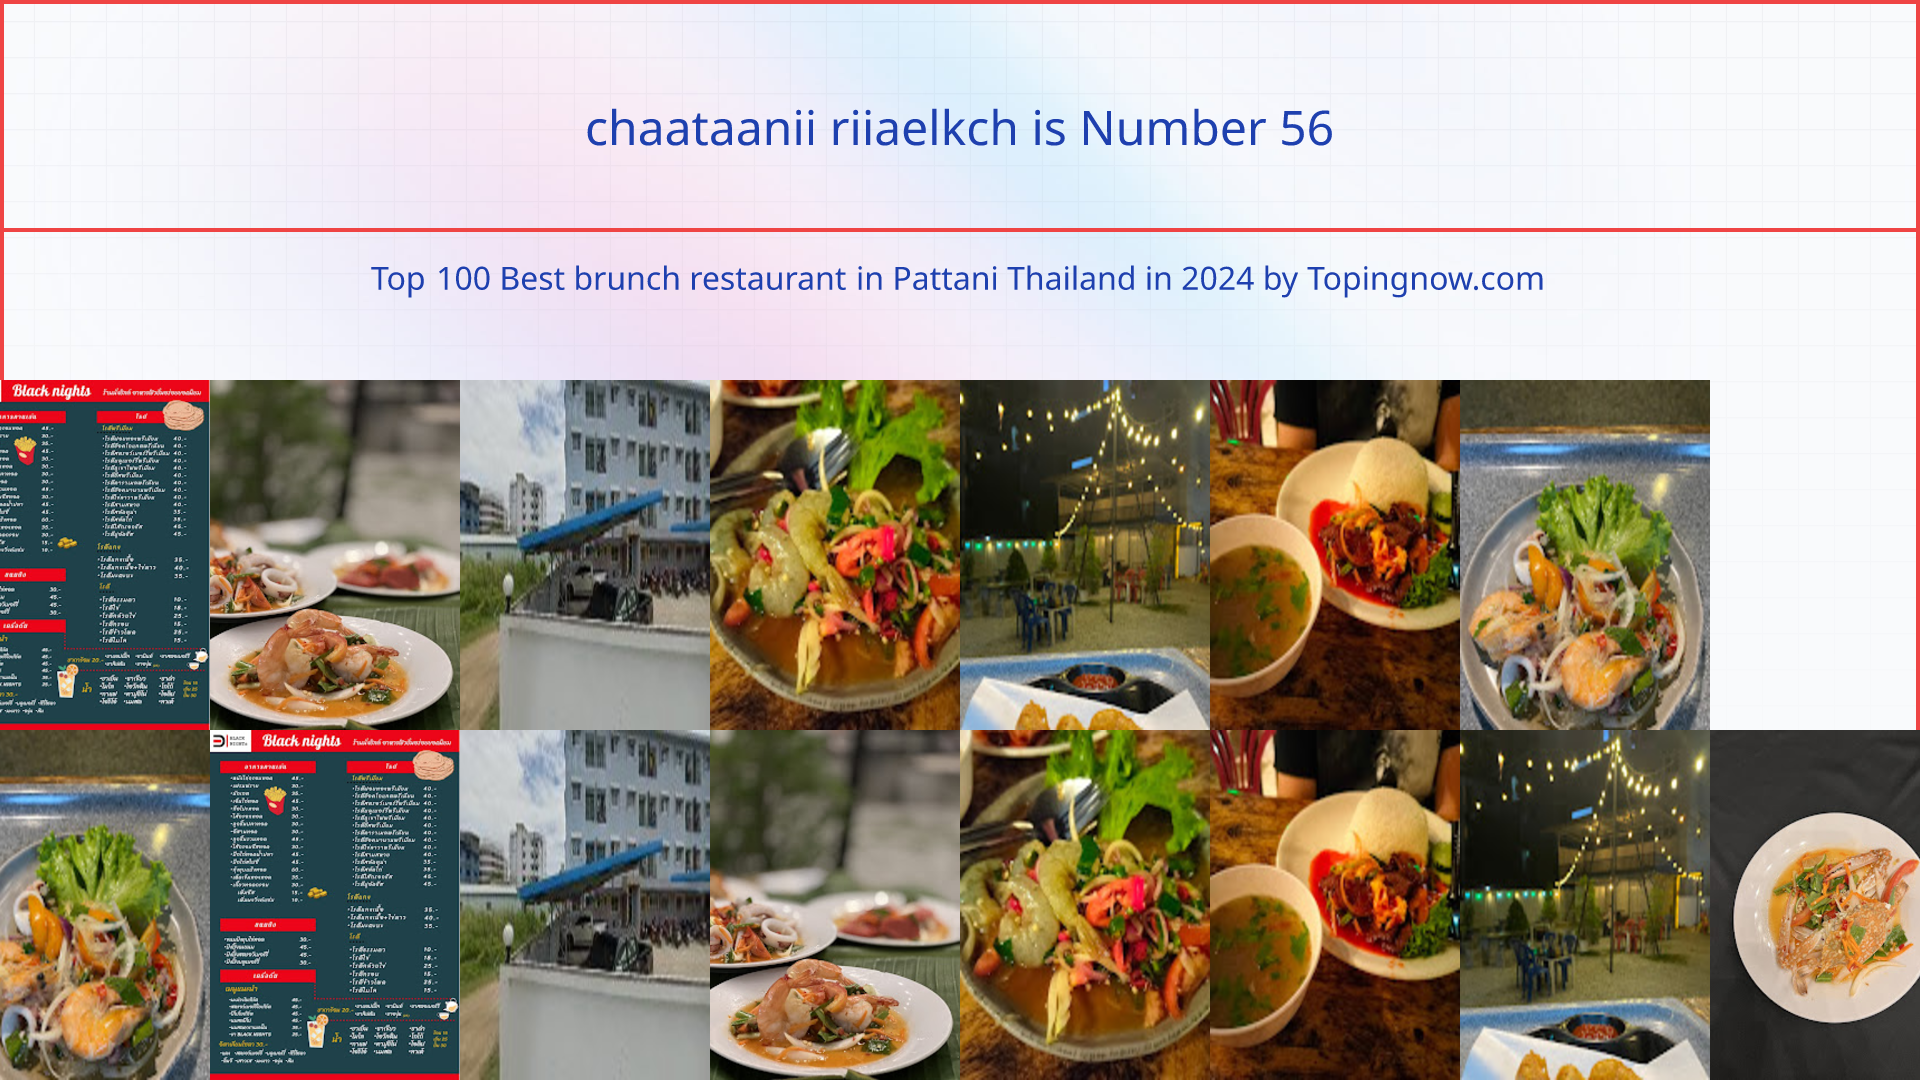 chaataanii riiaelkch: Top 100 Best brunch restaurant in Pattani Thailand in 2024